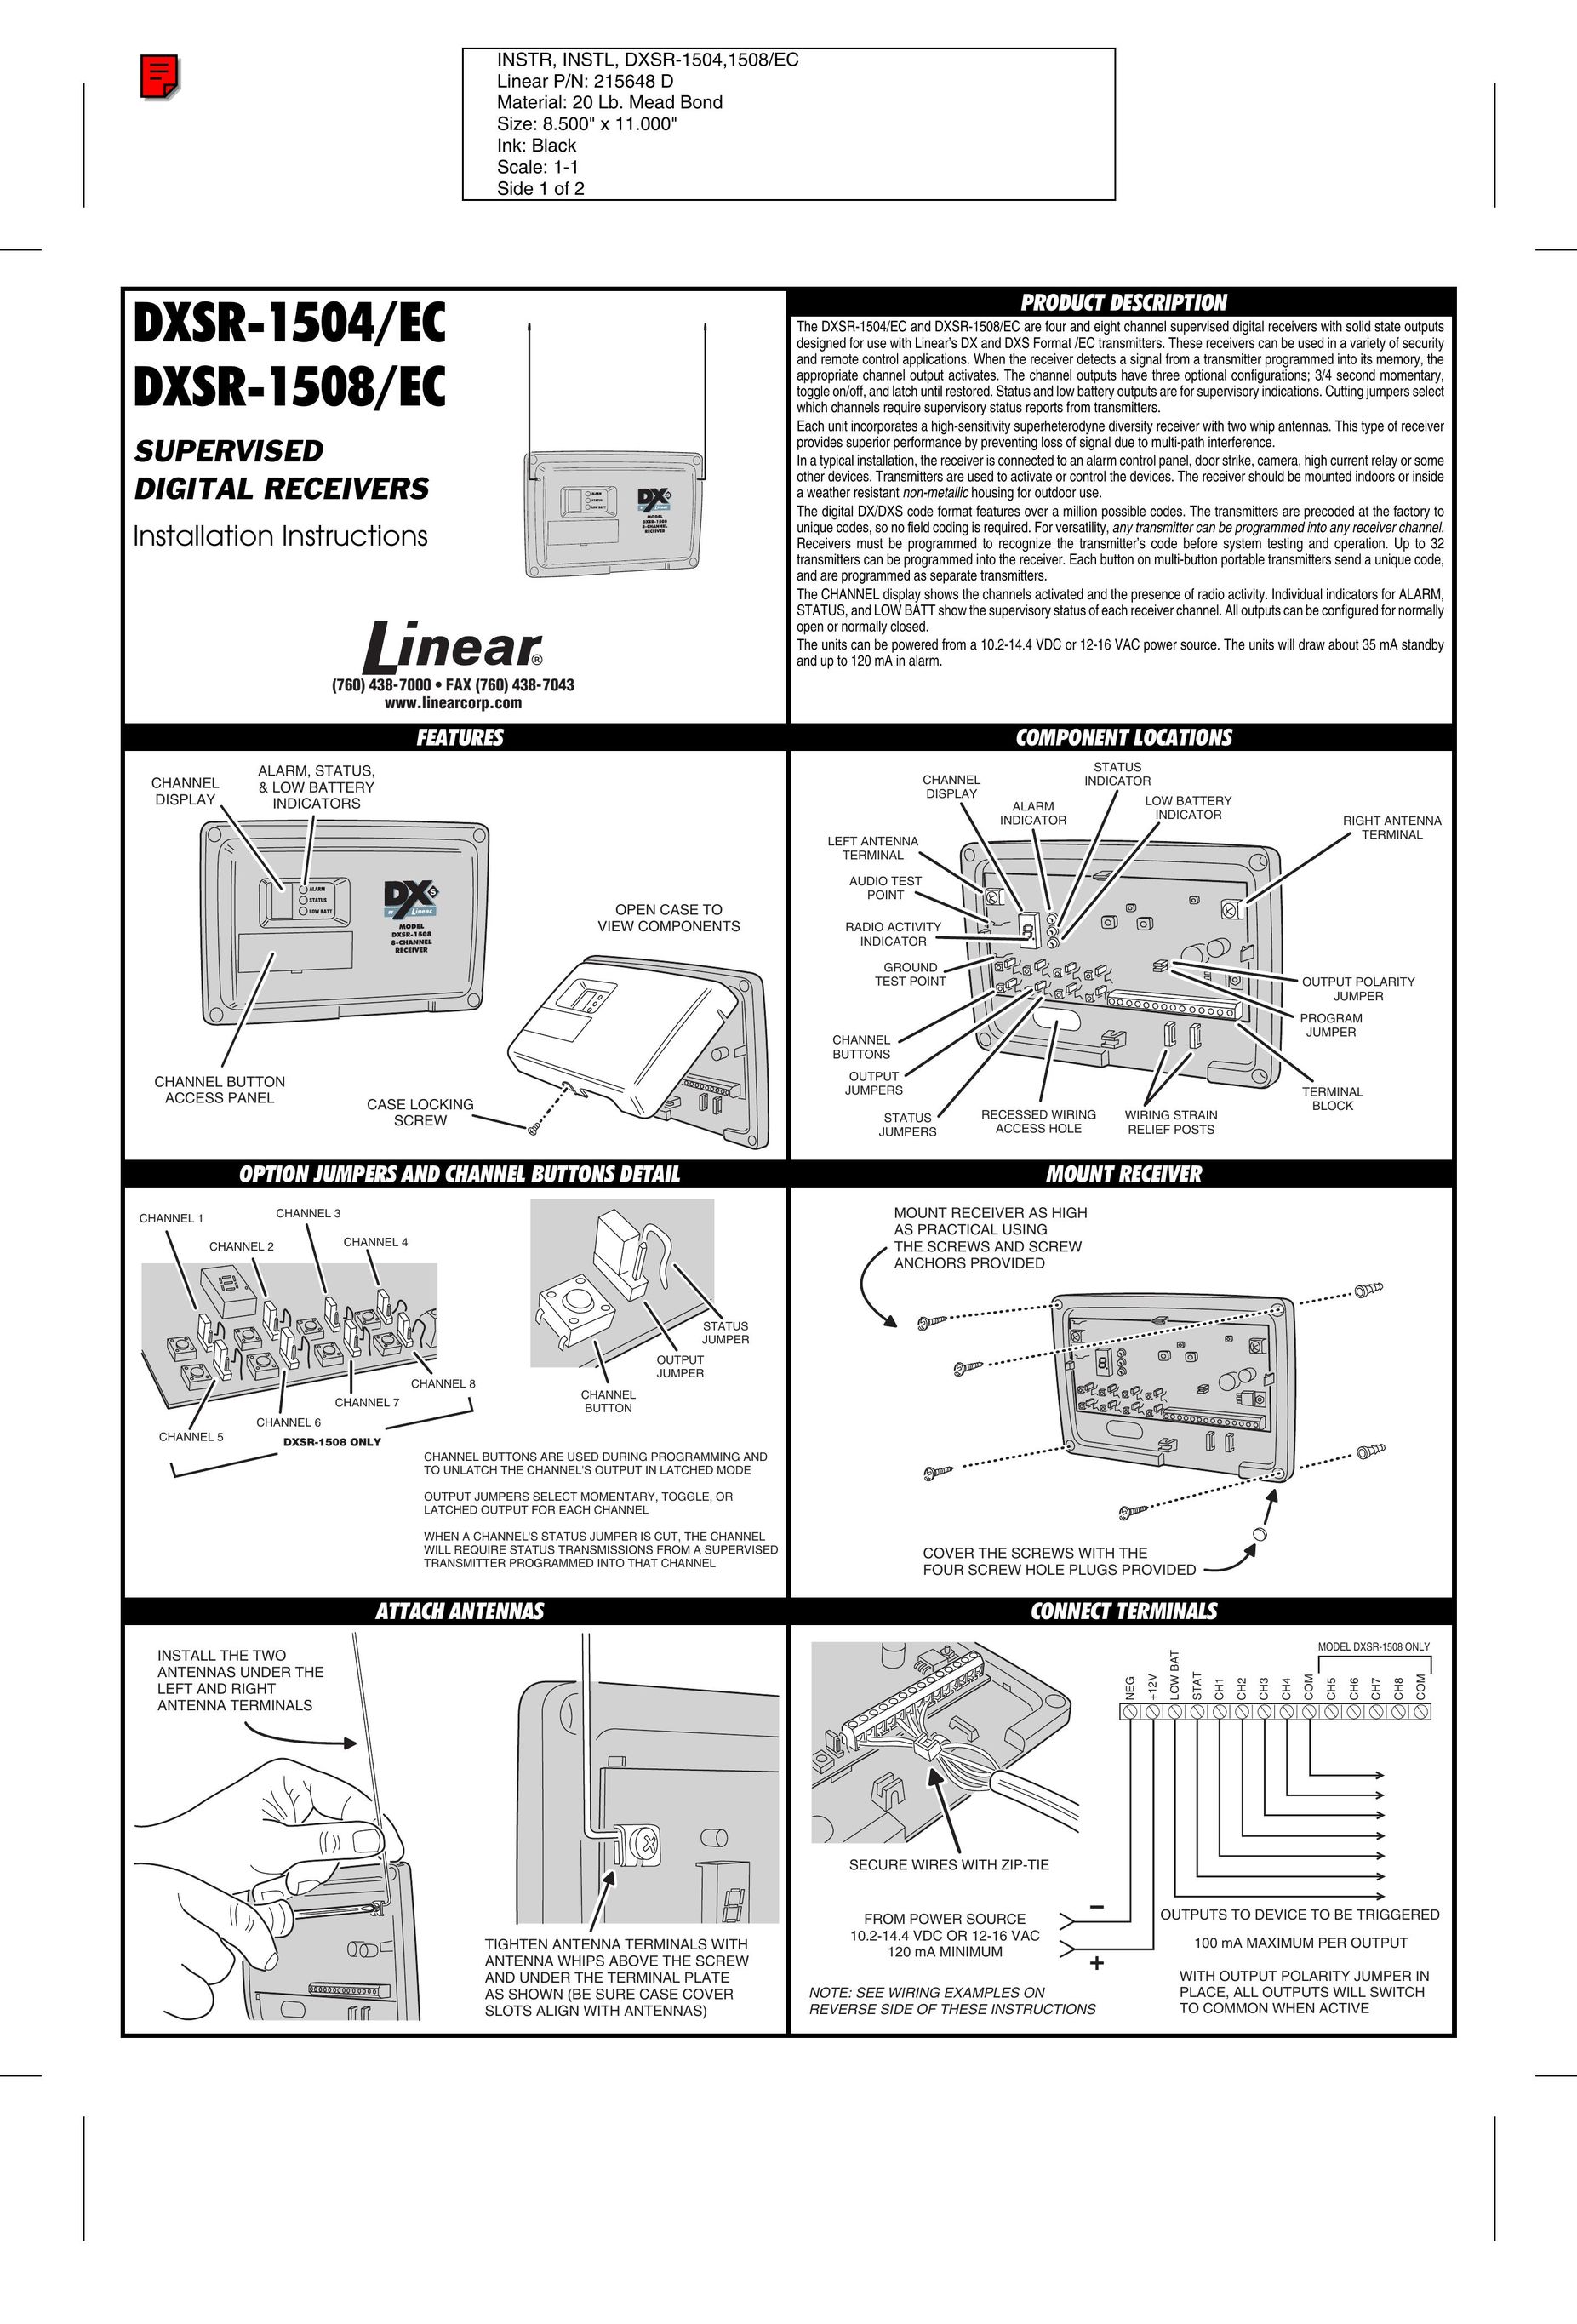 Linear DXSR-1508/EC TV Receiver User Manual